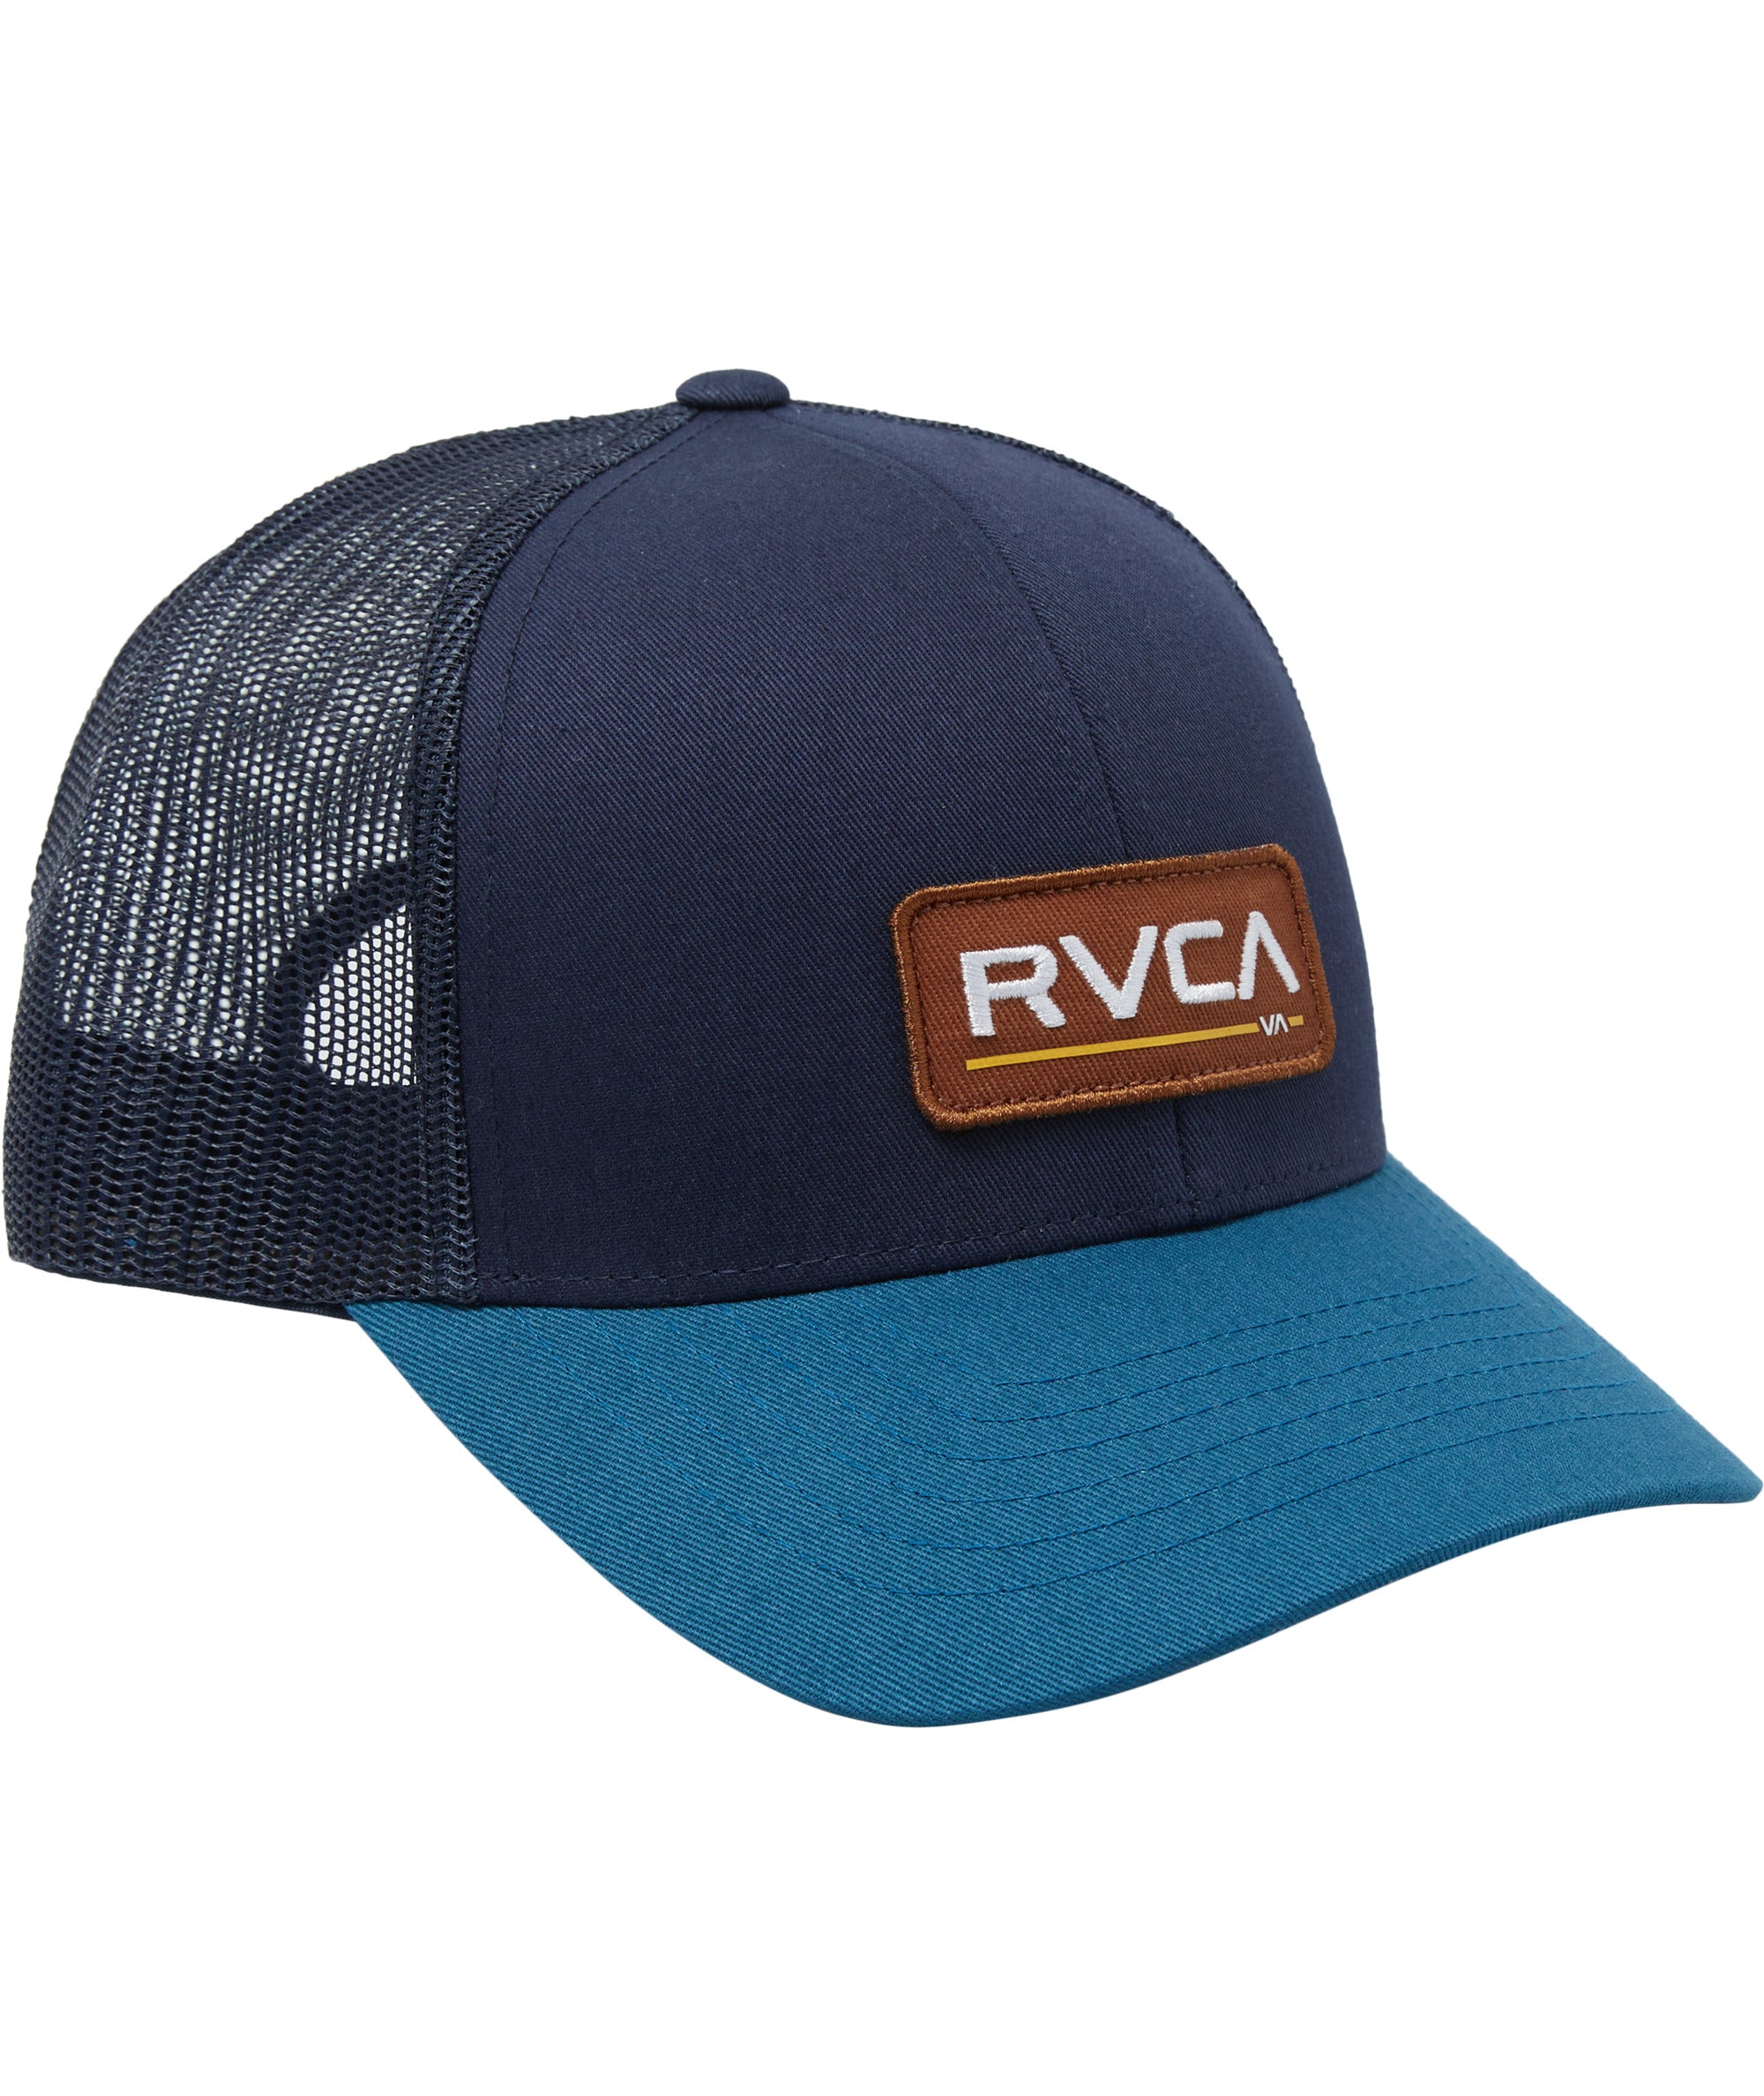 RVCA Men's Ticket Trucker III Hat